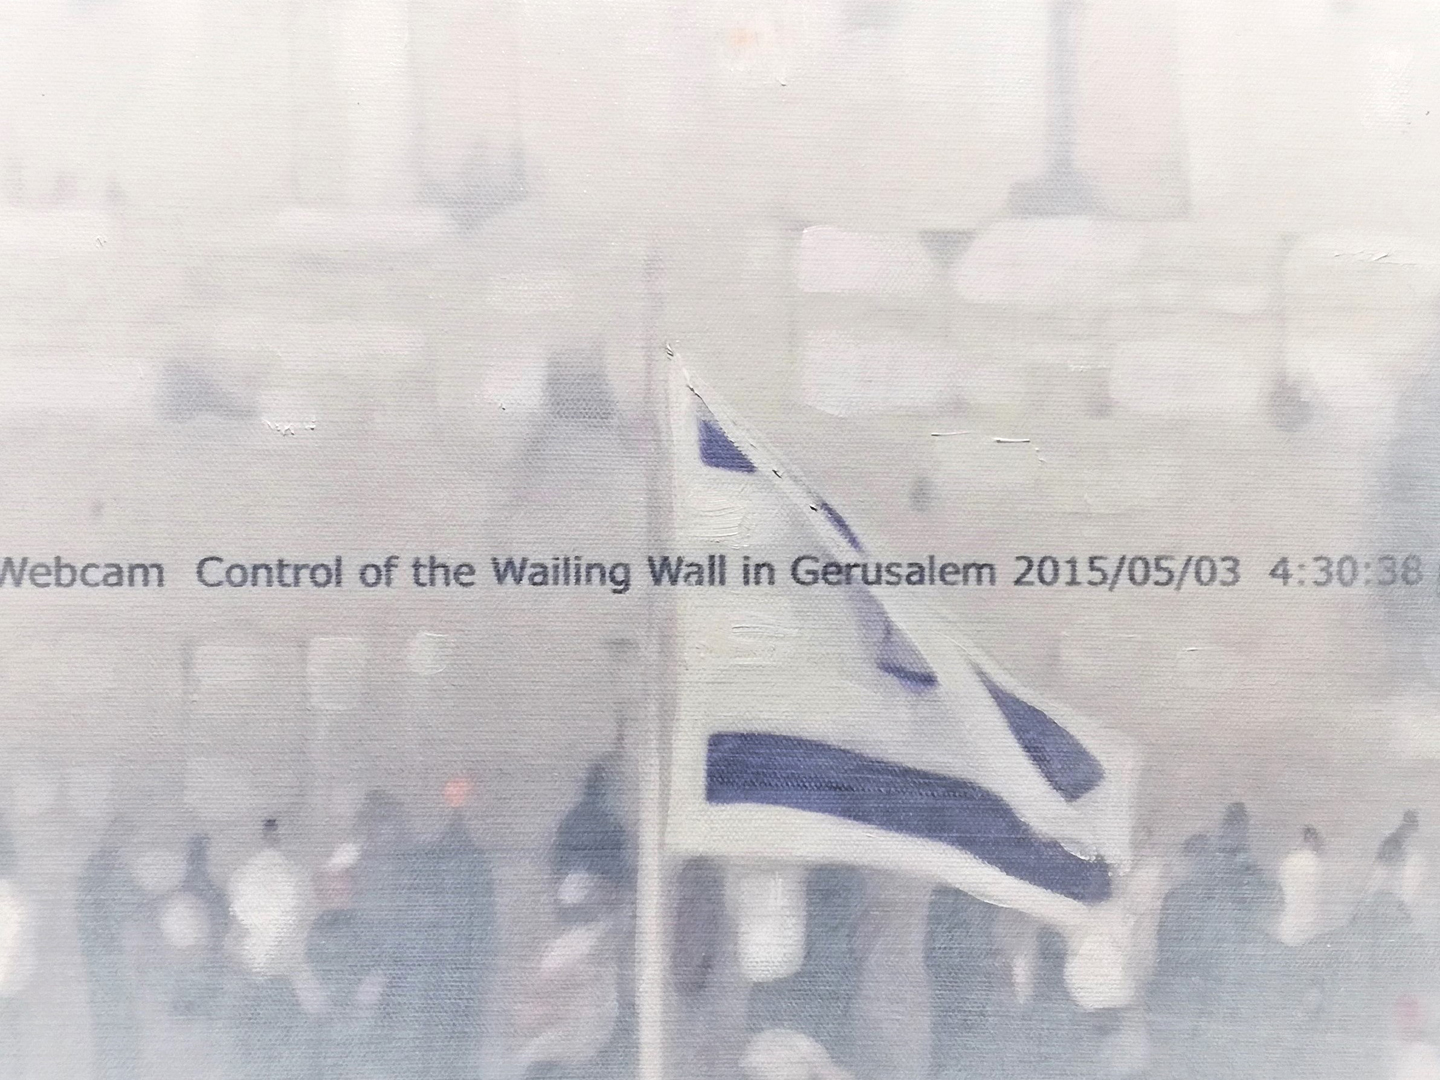 2015 Webcam conrol of the wailing wall in gerusalem 2015 05 03 4 30 38 31 cm x 23 cm opera su tela  